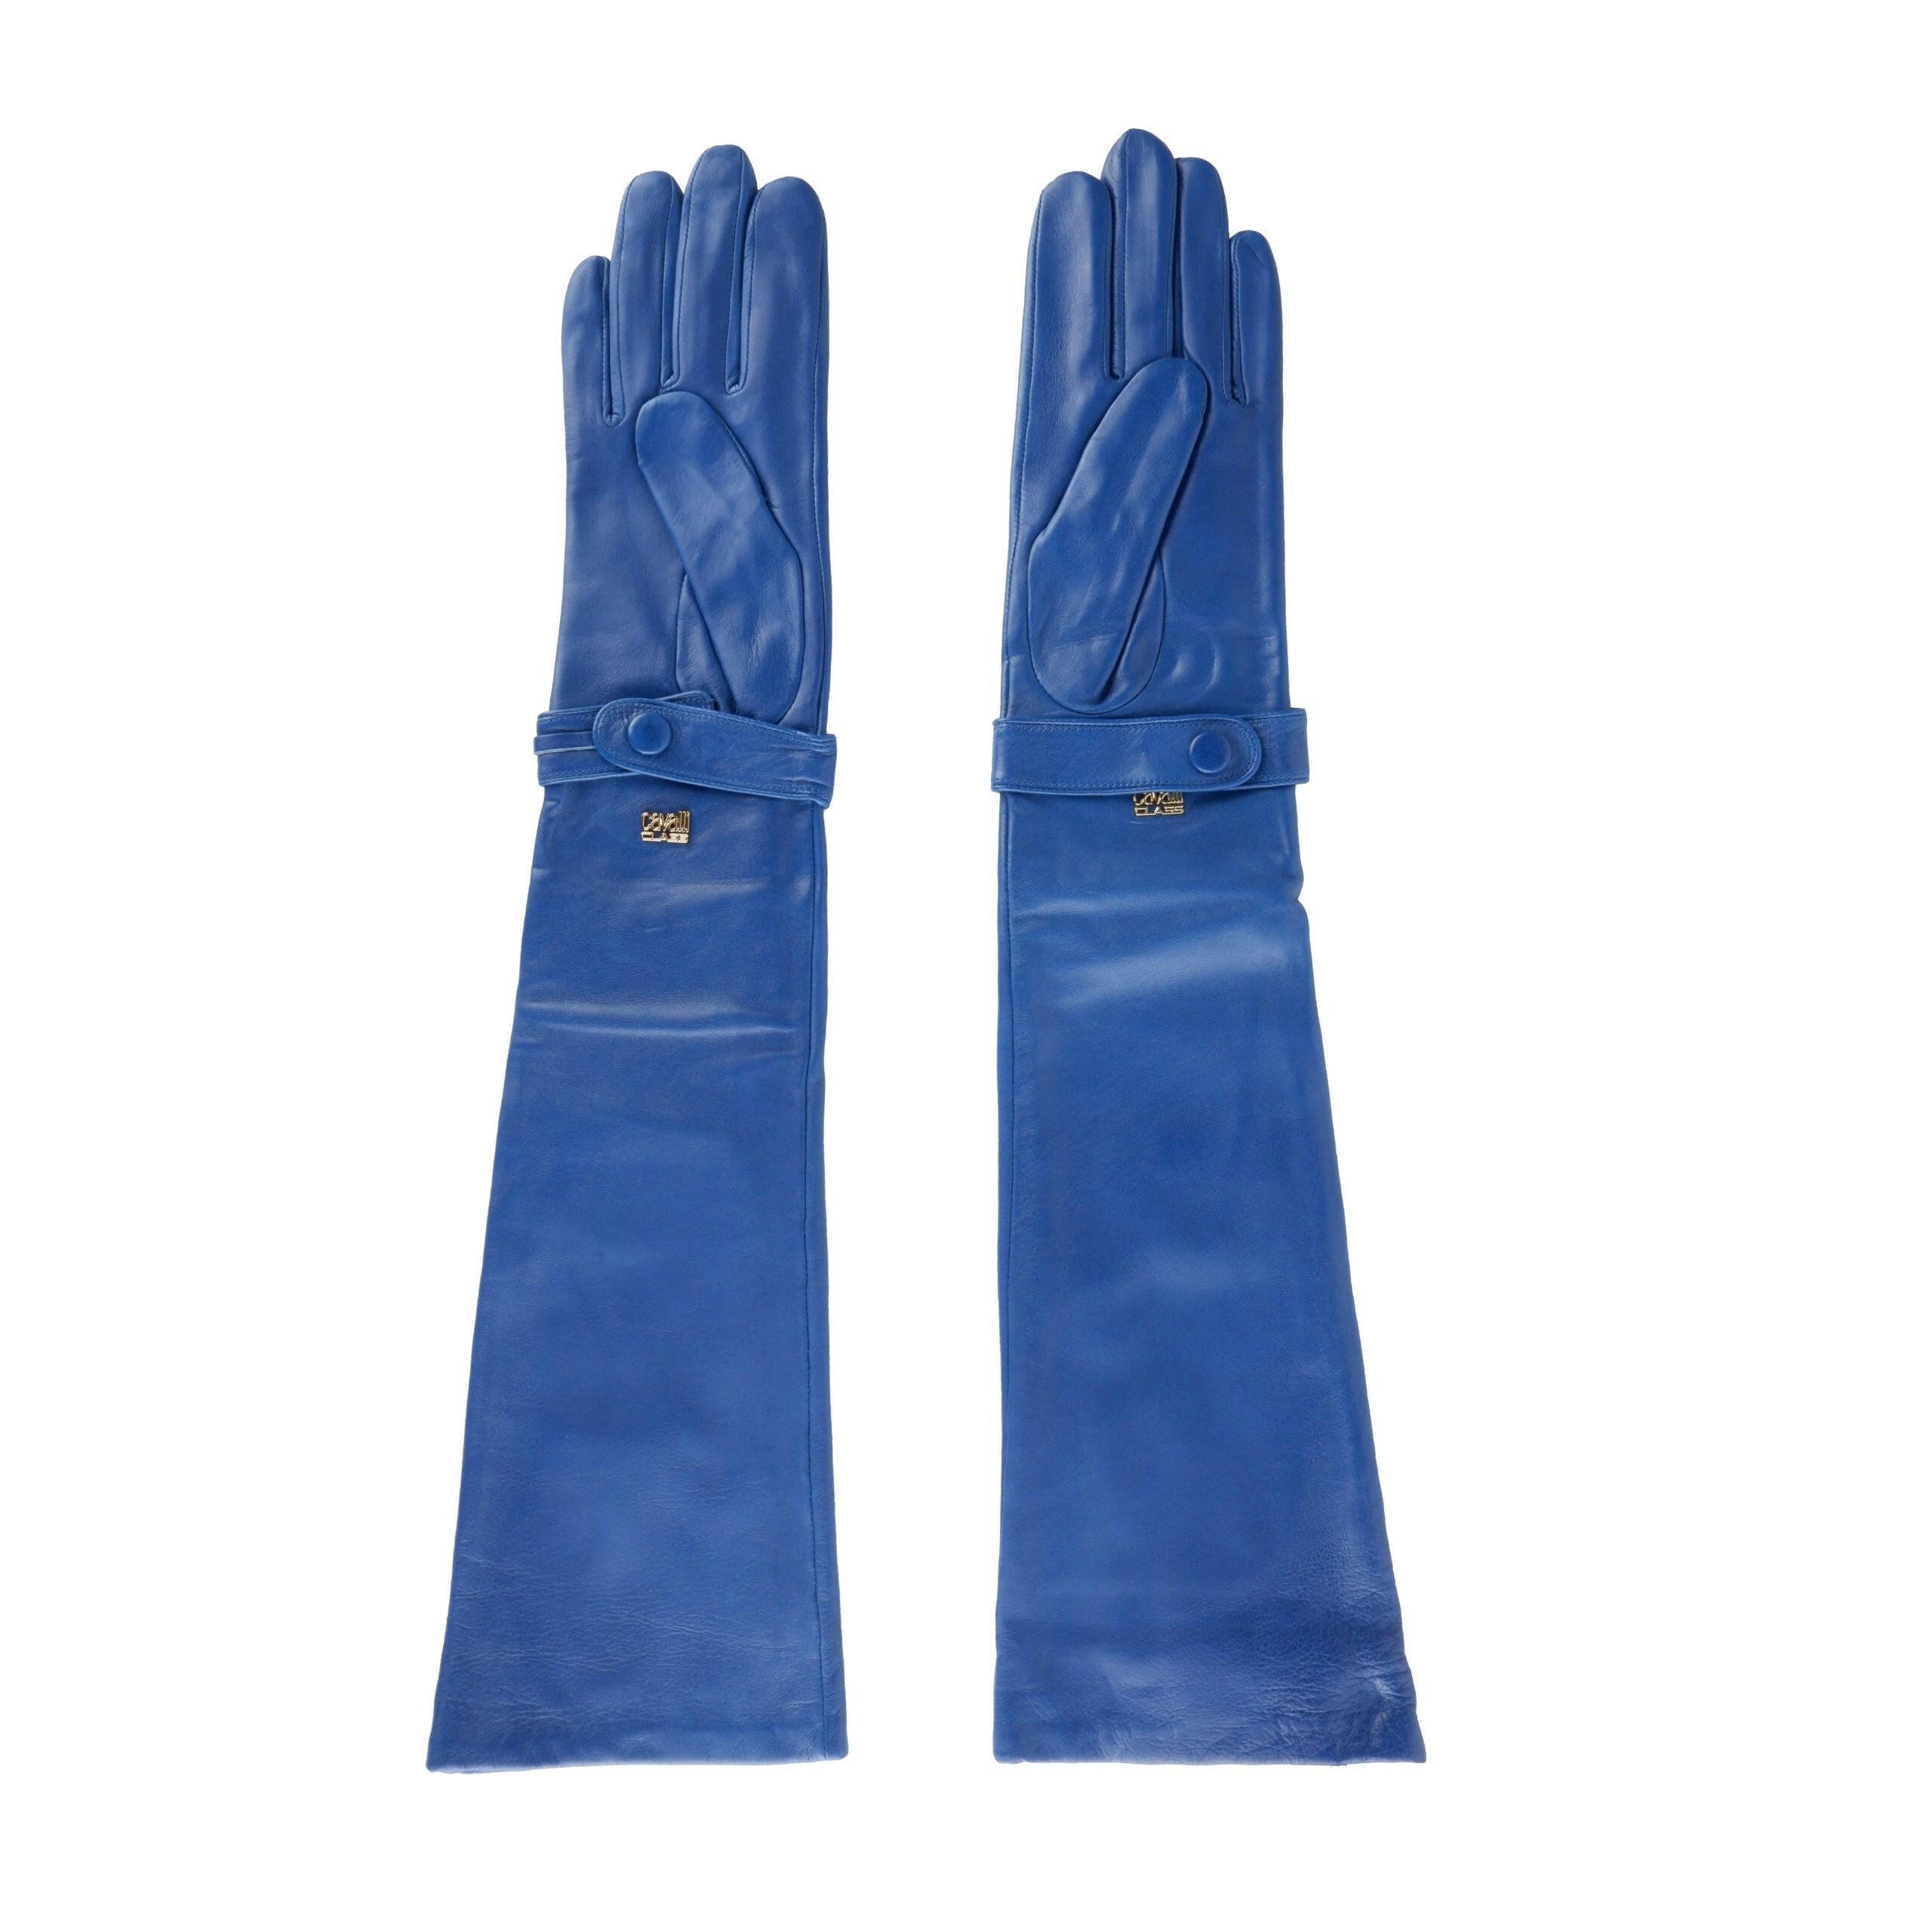 Cavalli Class Blue Leather Di Lambskin Glove - GENUINE AUTHENTIC BRAND LLC  